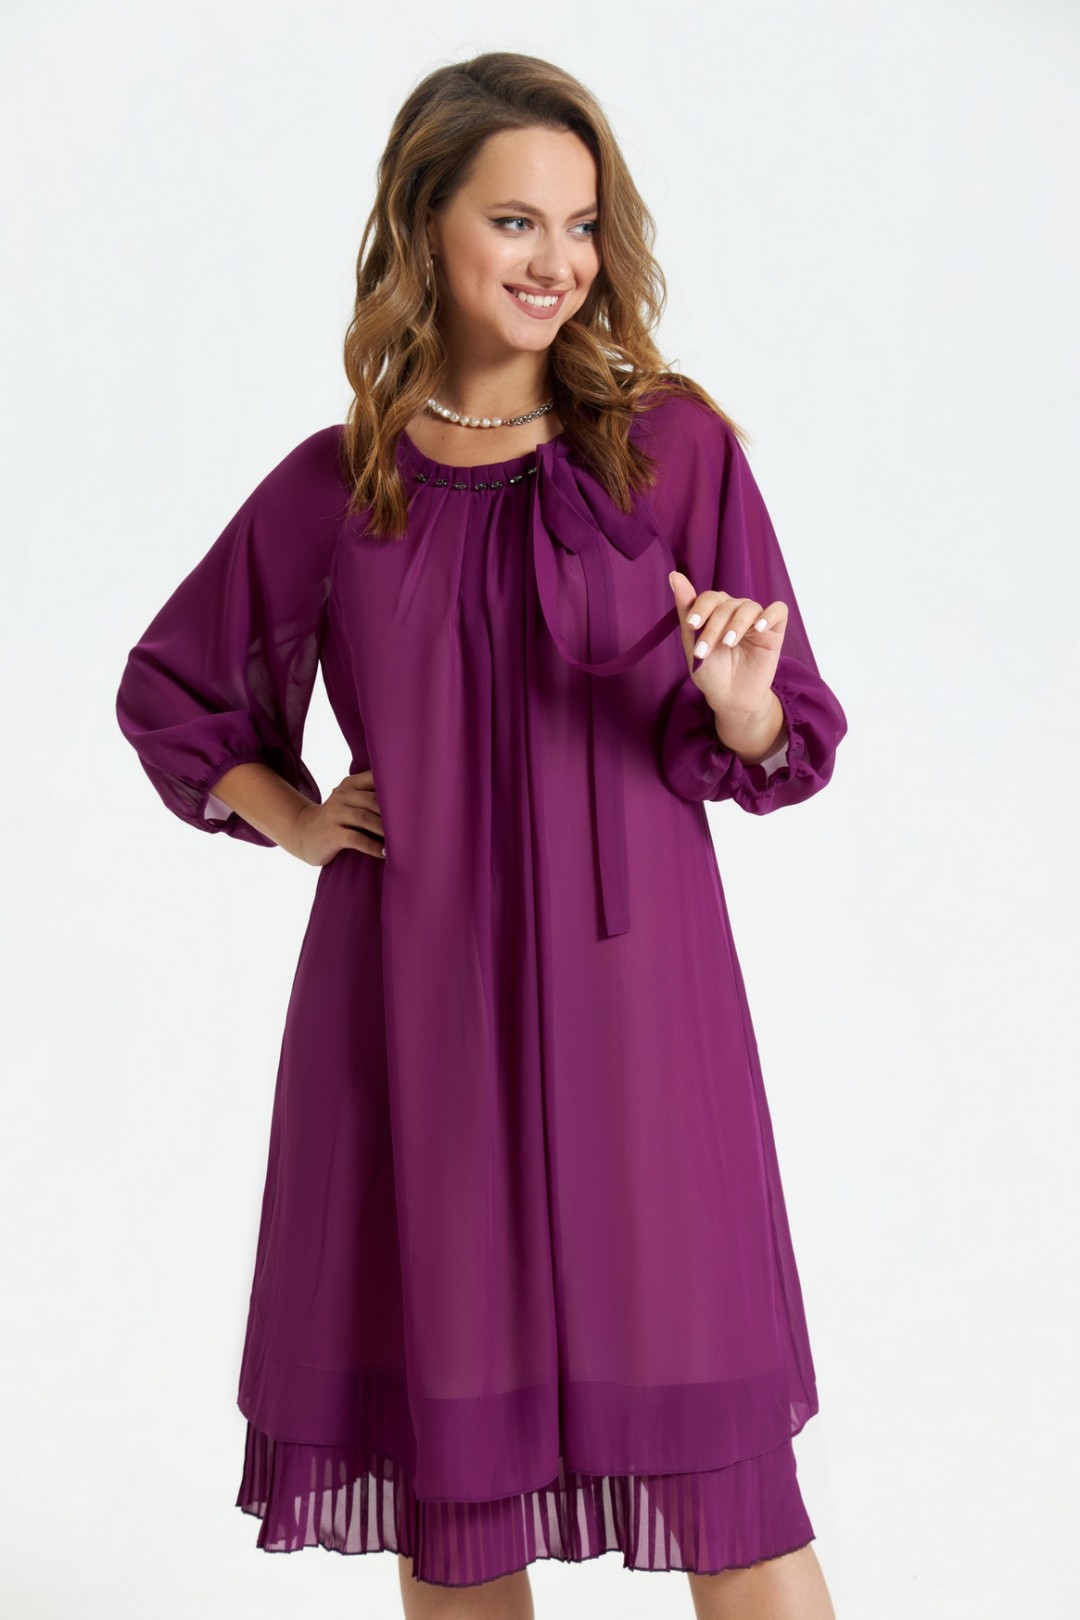 Платье TEZA 2683 фиолетовый